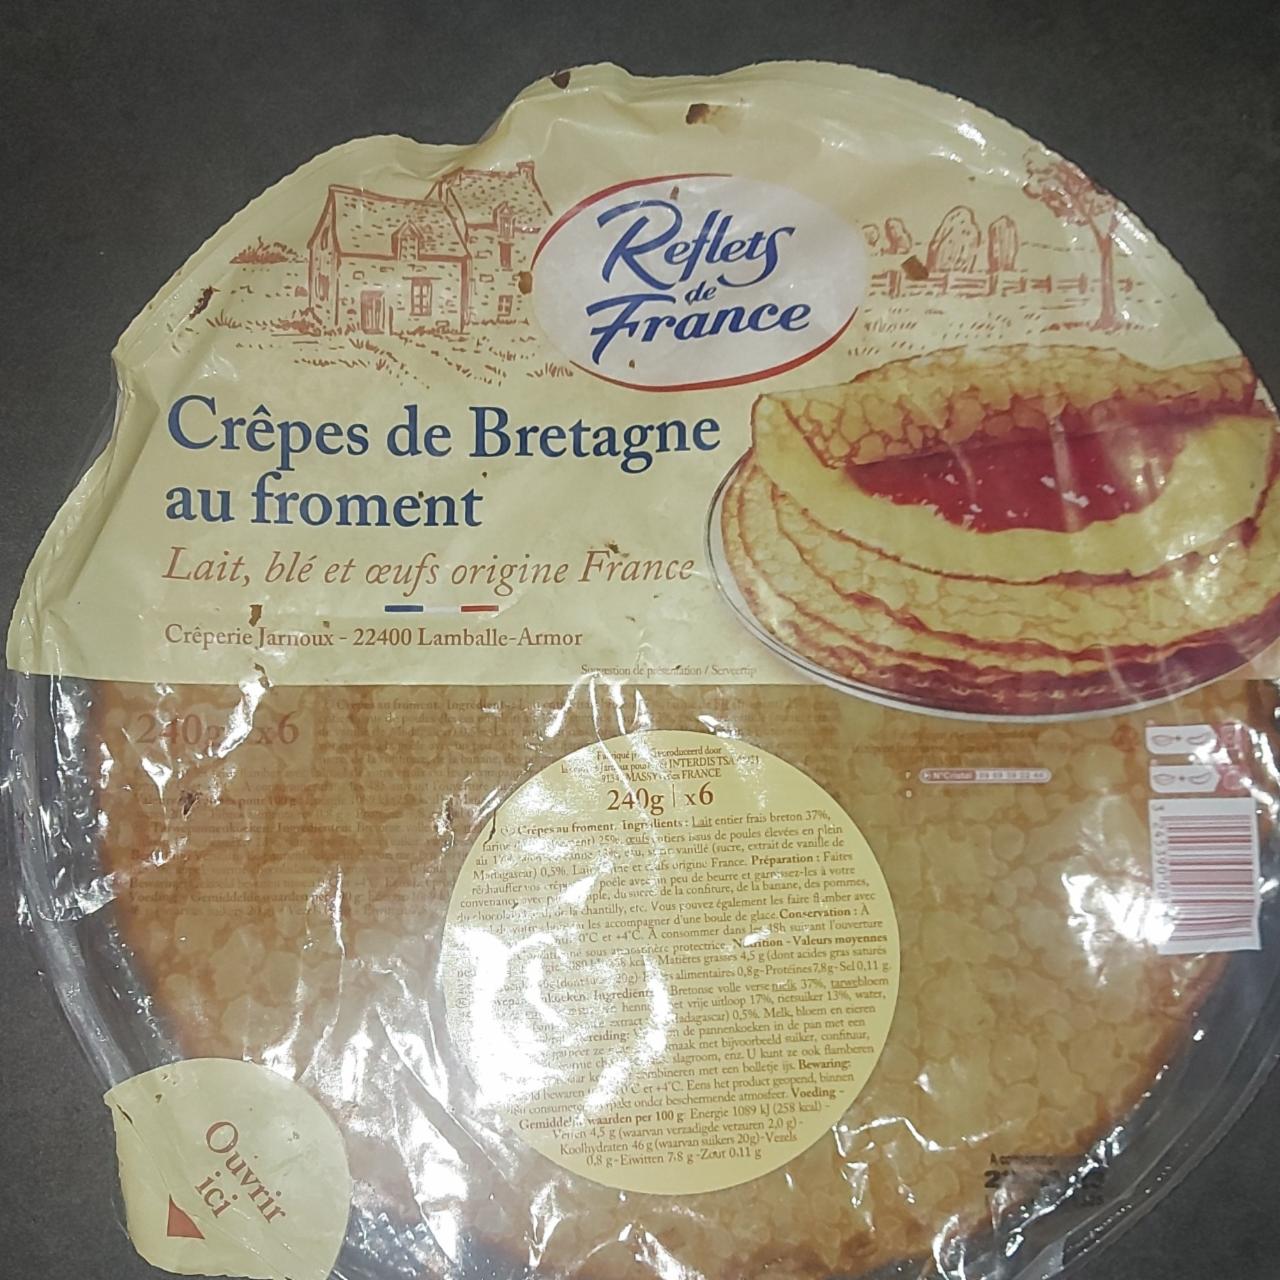 Fotografie - Crêpes de Bretagne au froment Reflets de France